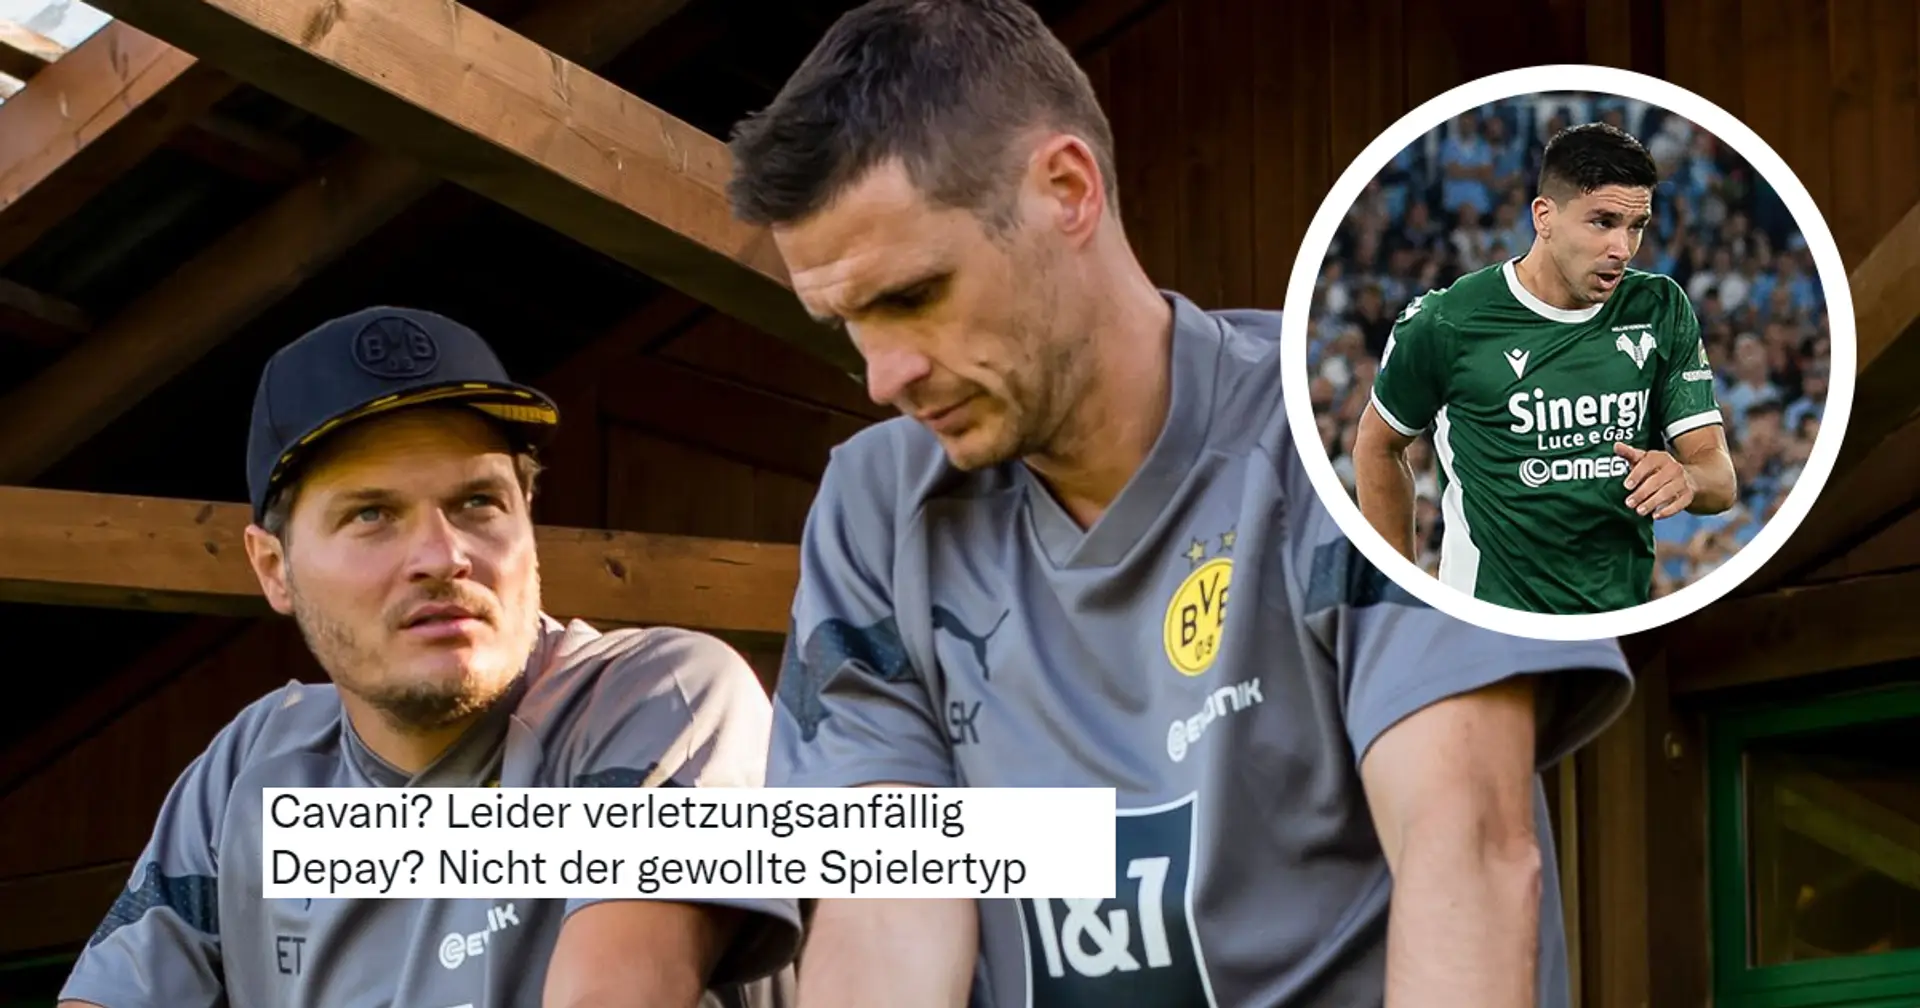 Cavani, Depay, Simeone werden nicht zu Borussia wechseln: BVB-Fan schließt 6 Spieler aus, die Haller ersetzen könnten